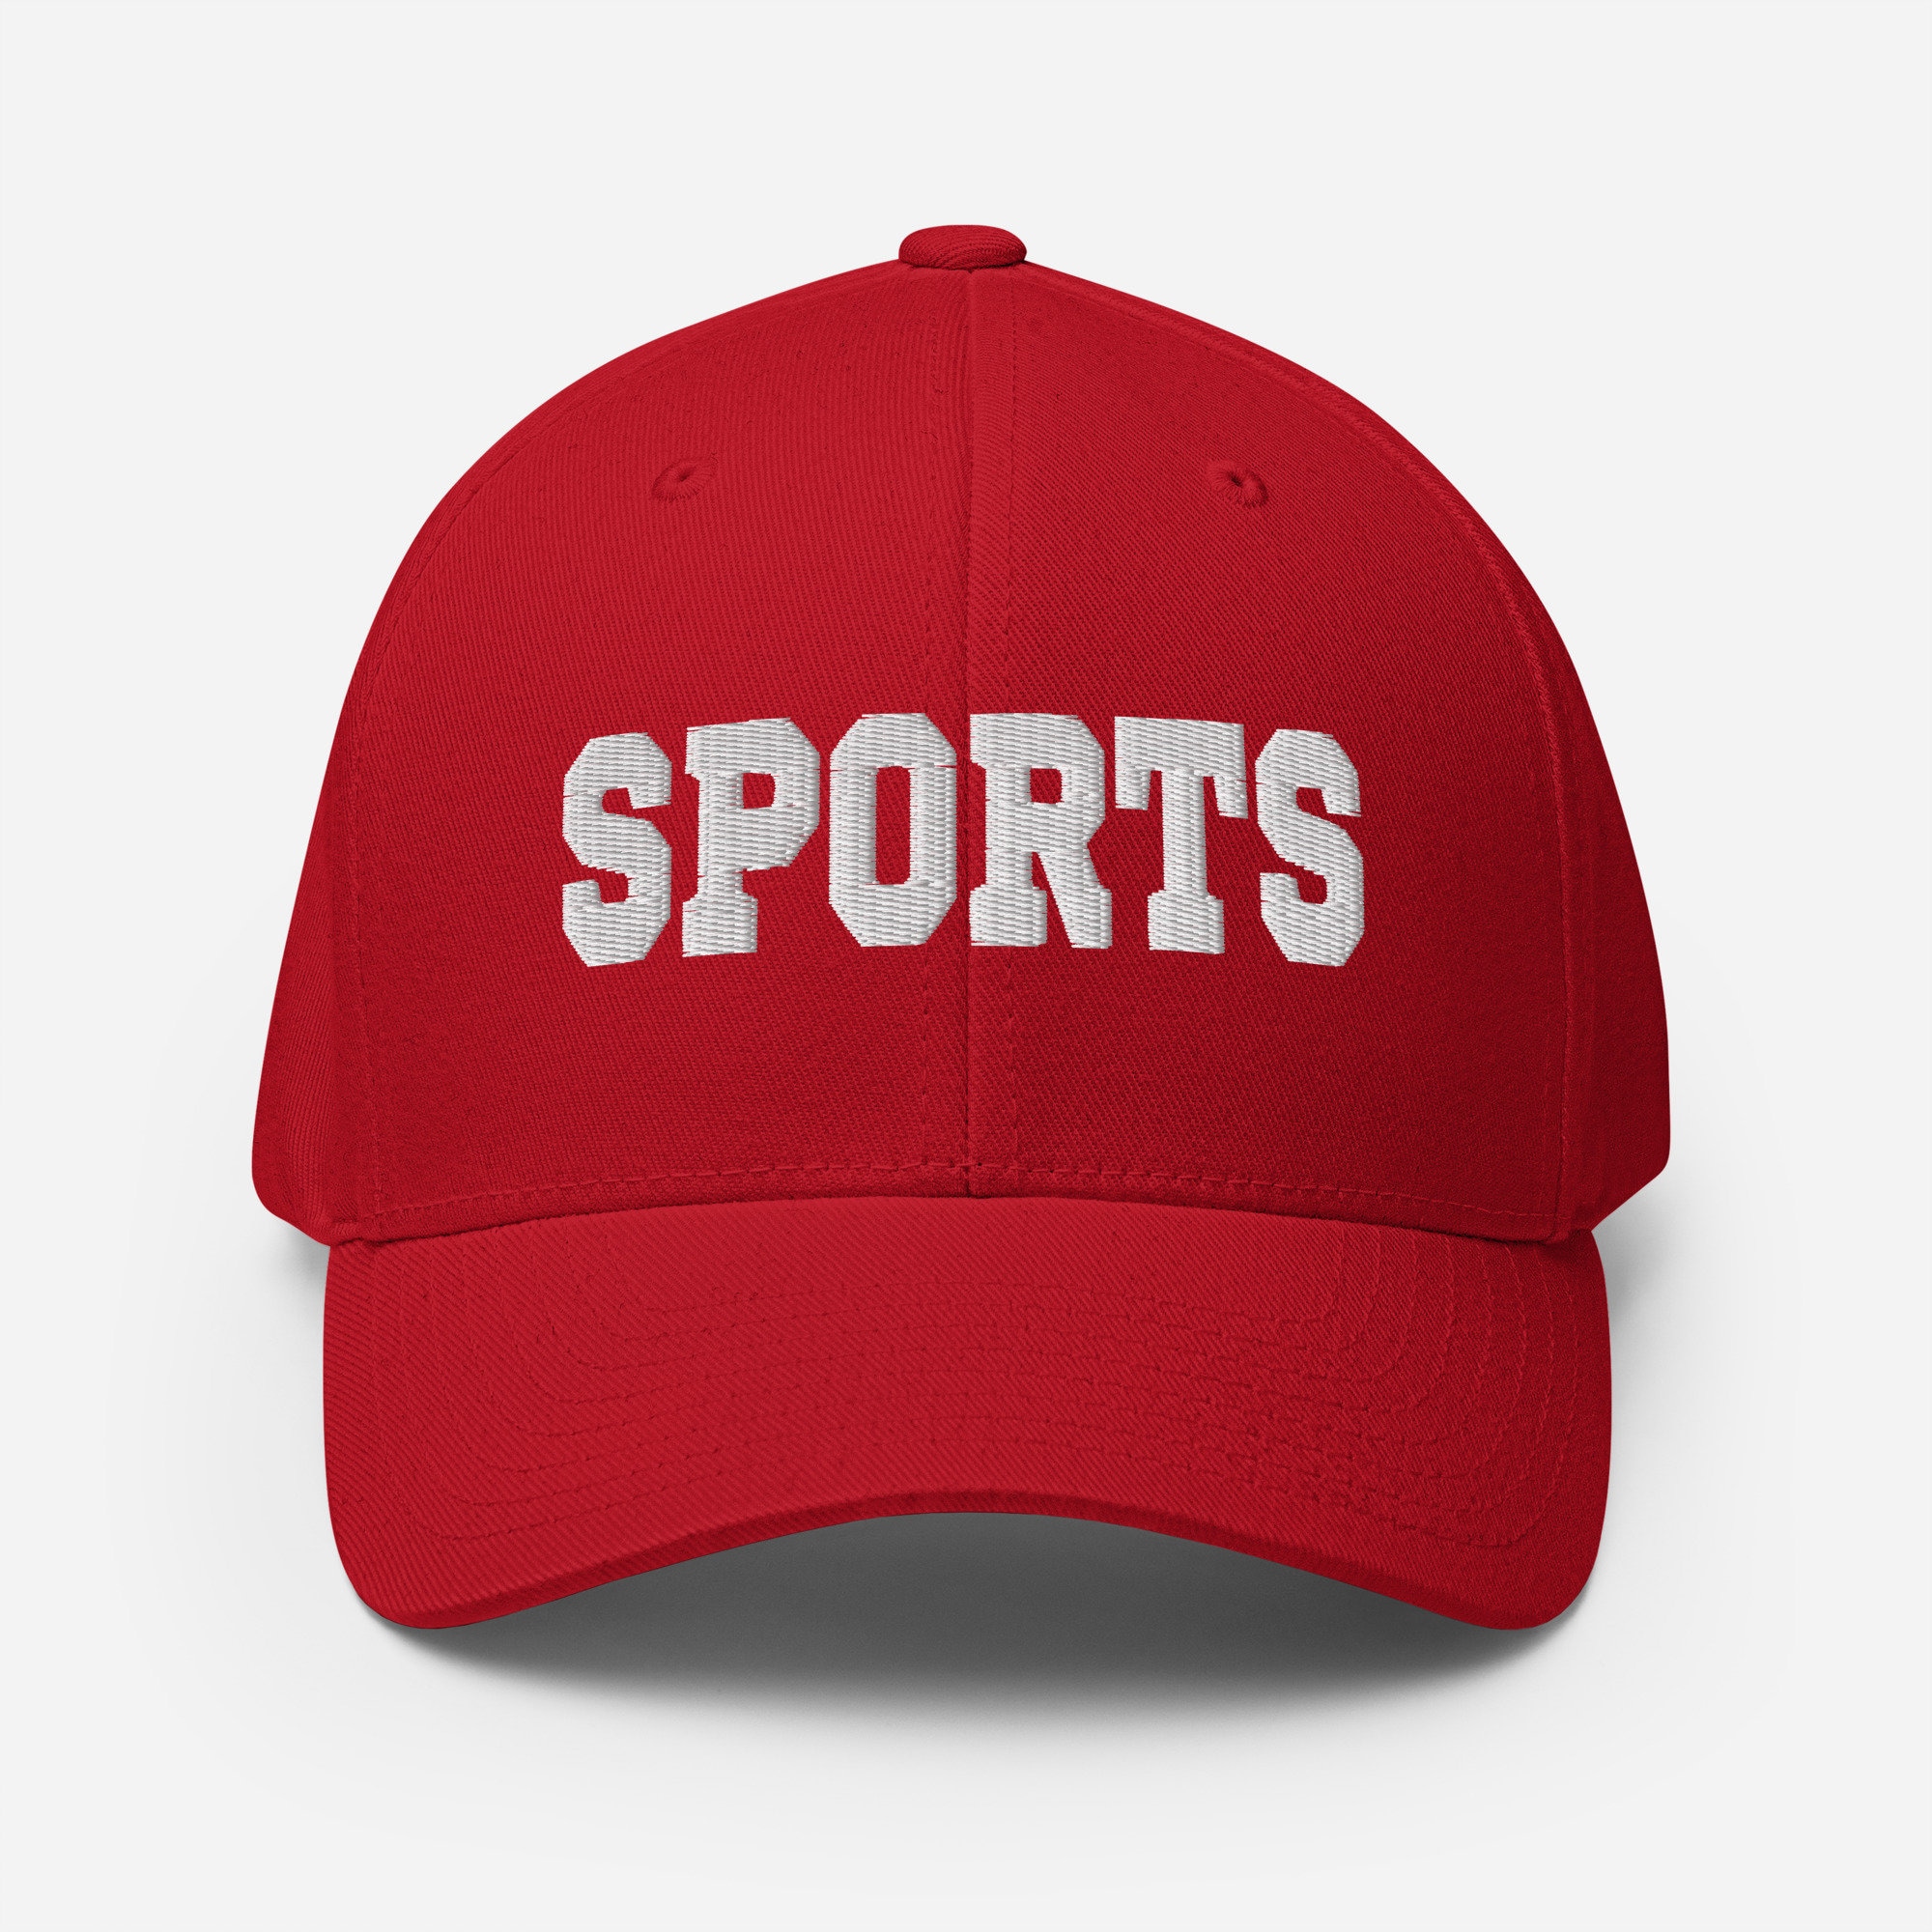 Norm Macdonald Sports Flexfit Cap Embroidery